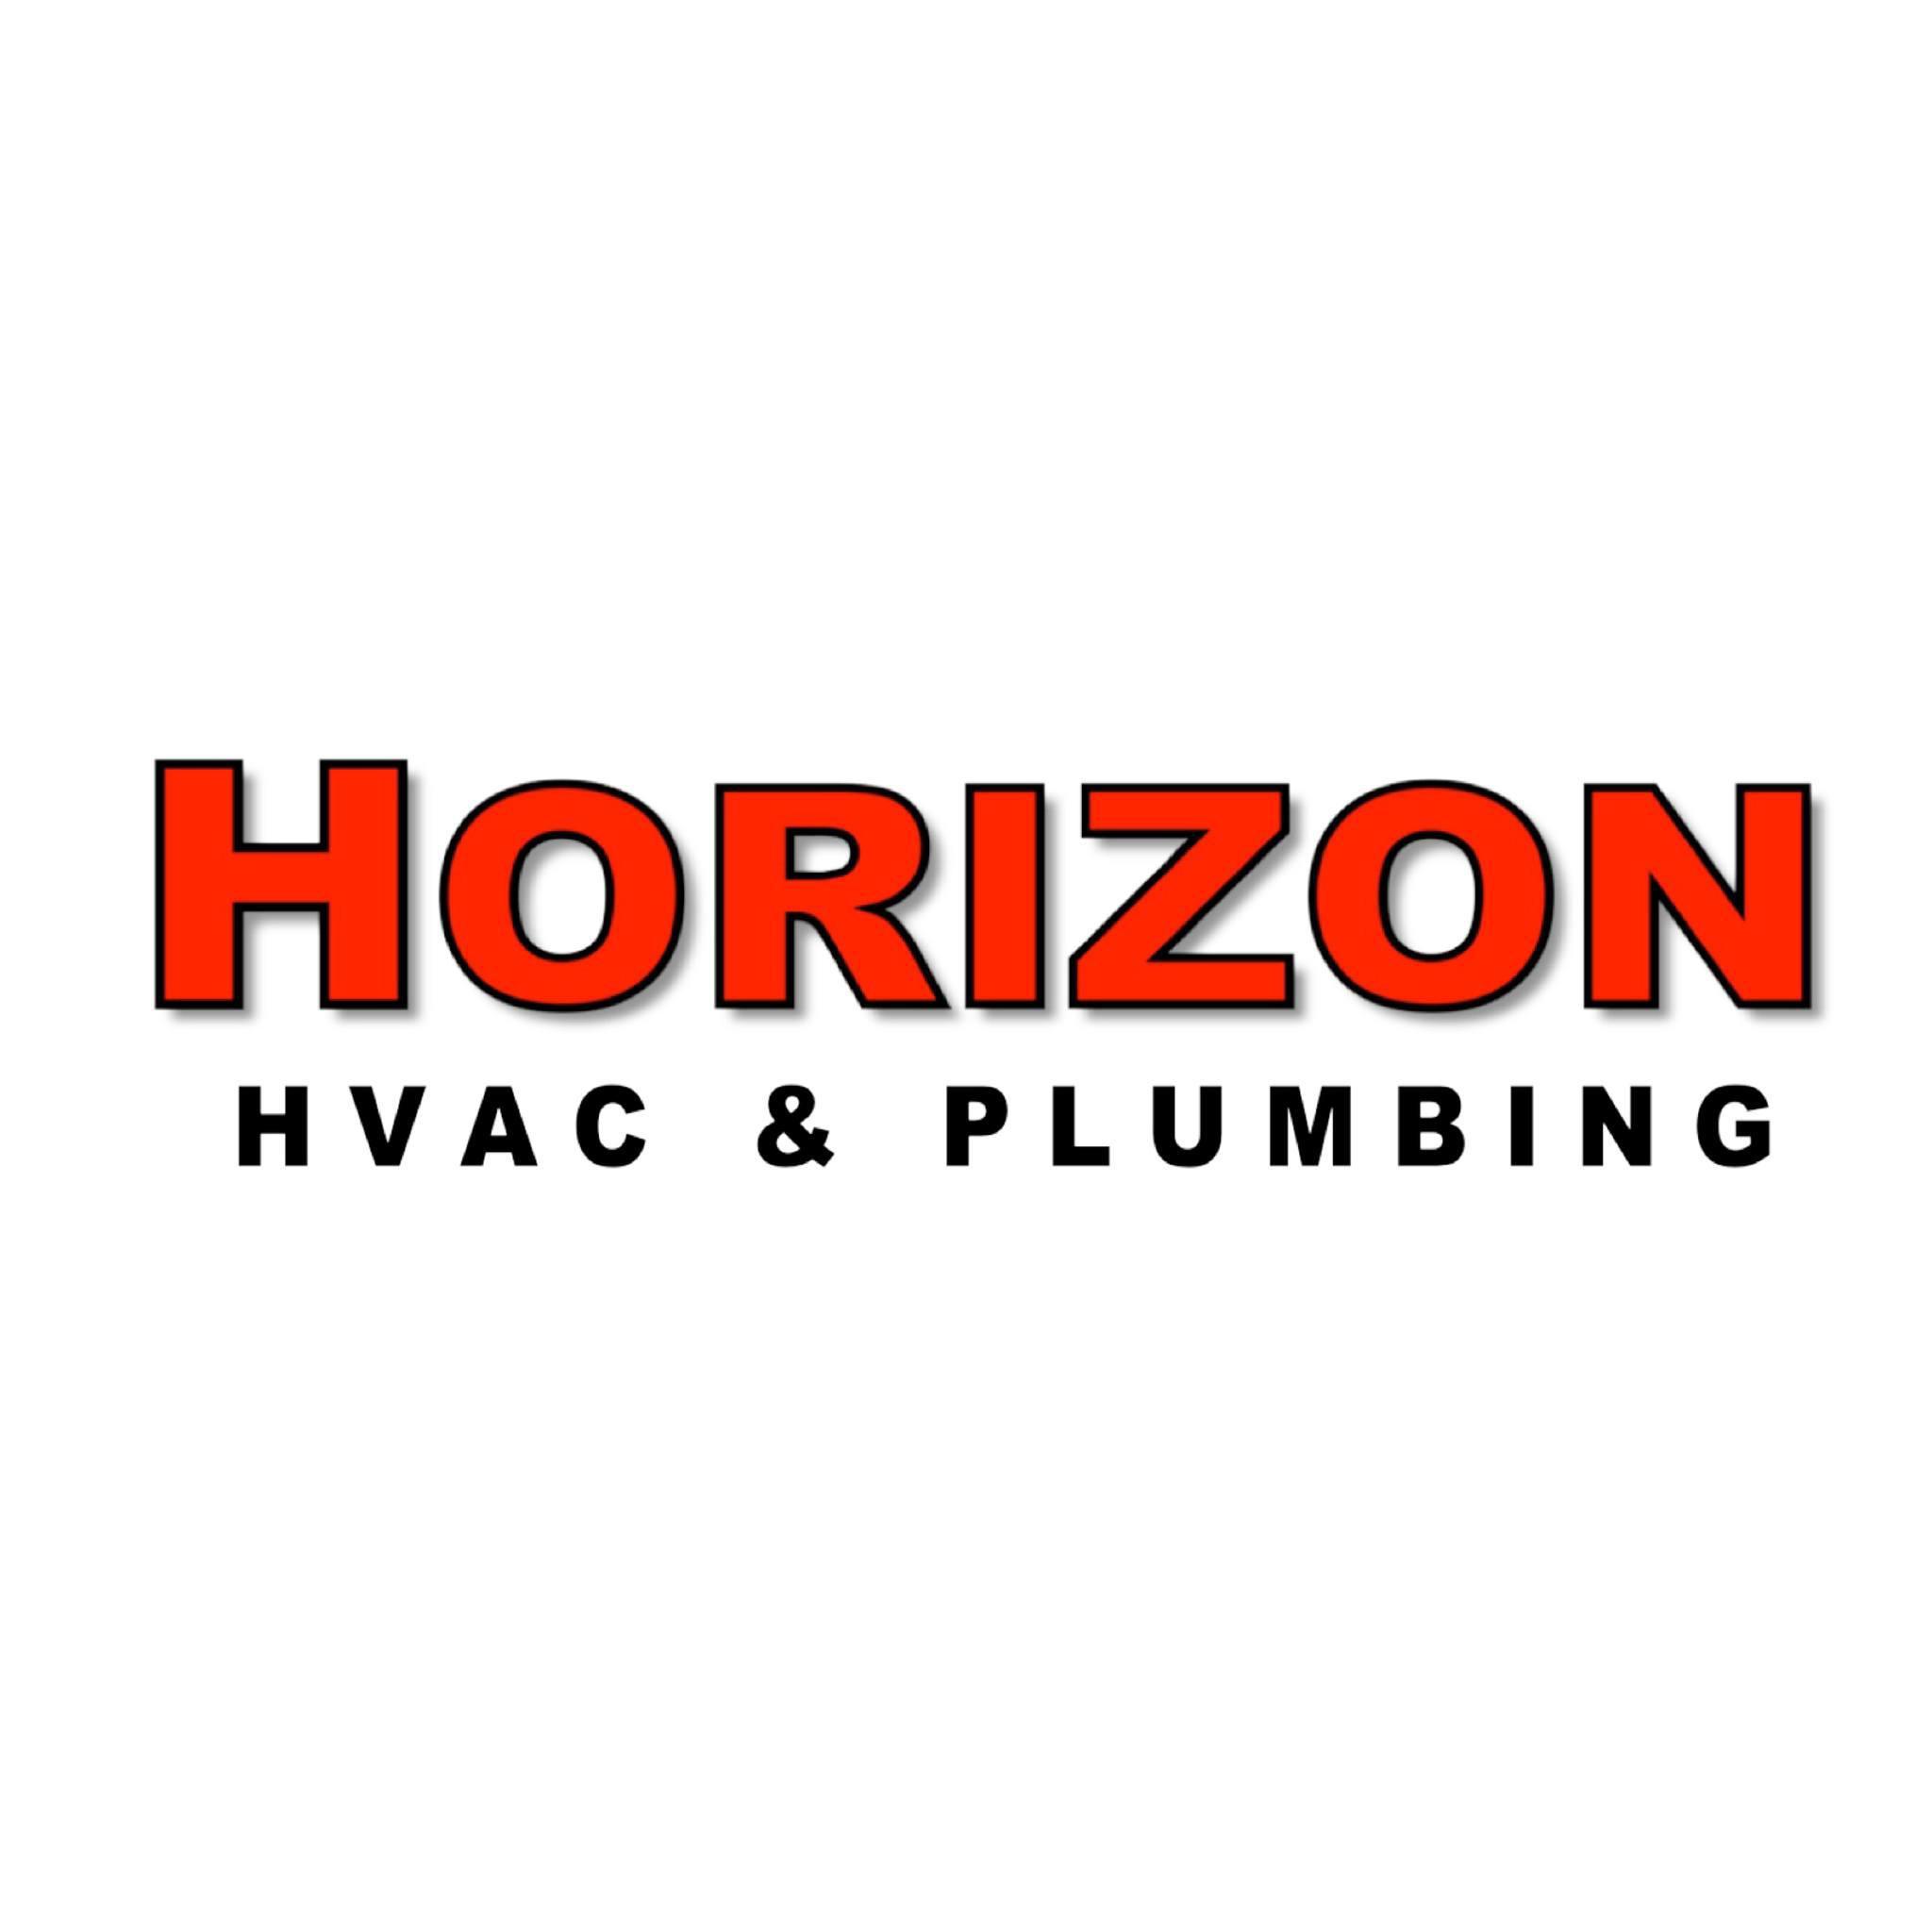 Horizon HVAC & Plumbing - Albuquerque, NM - (505)467-4966 | ShowMeLocal.com